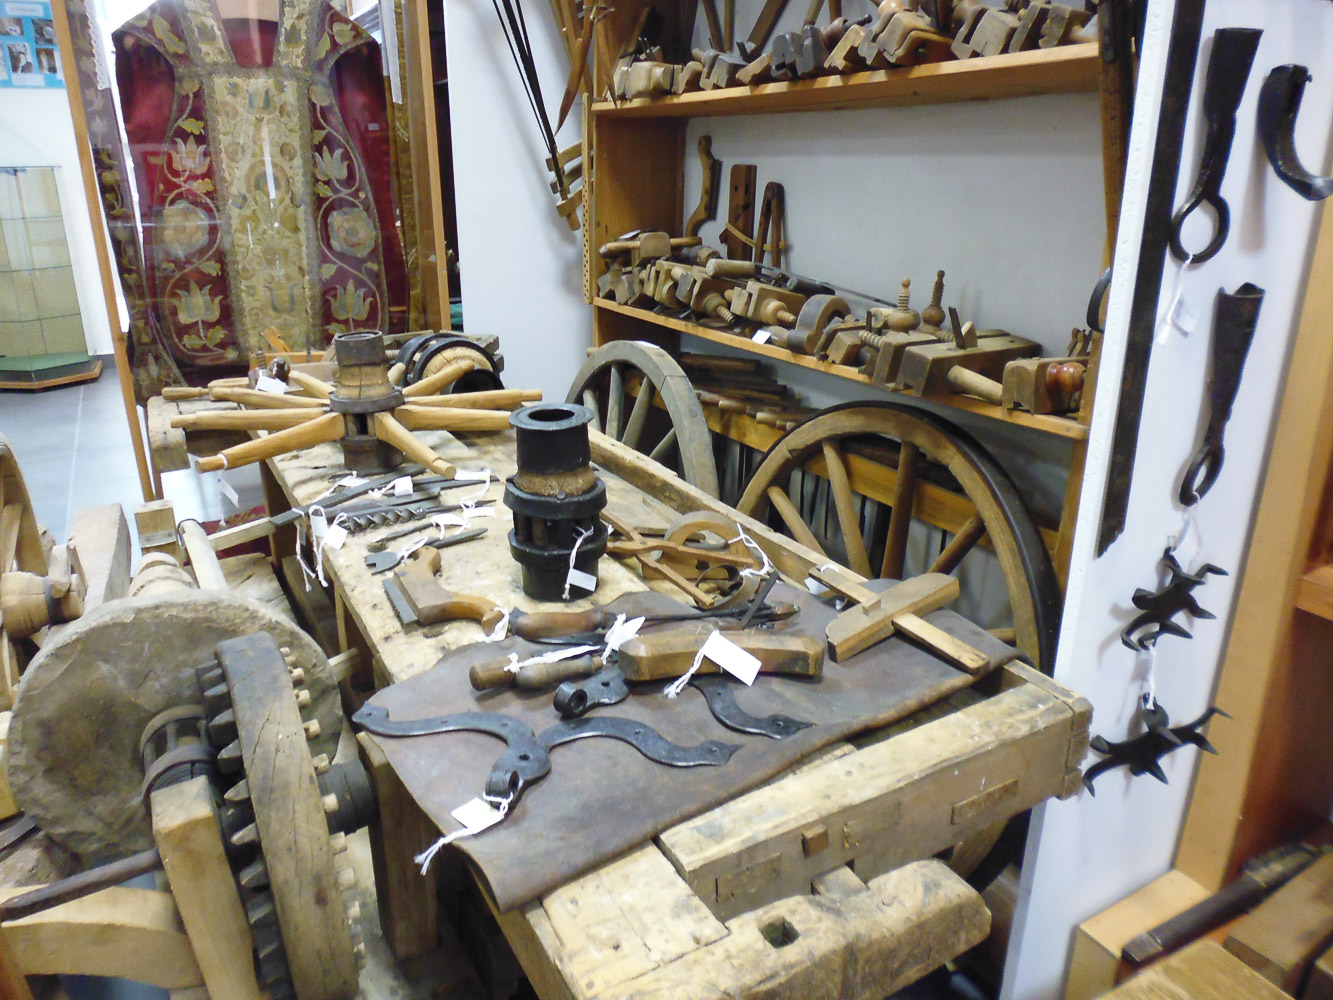 warsztat drewniany a na nim różne elementy kół